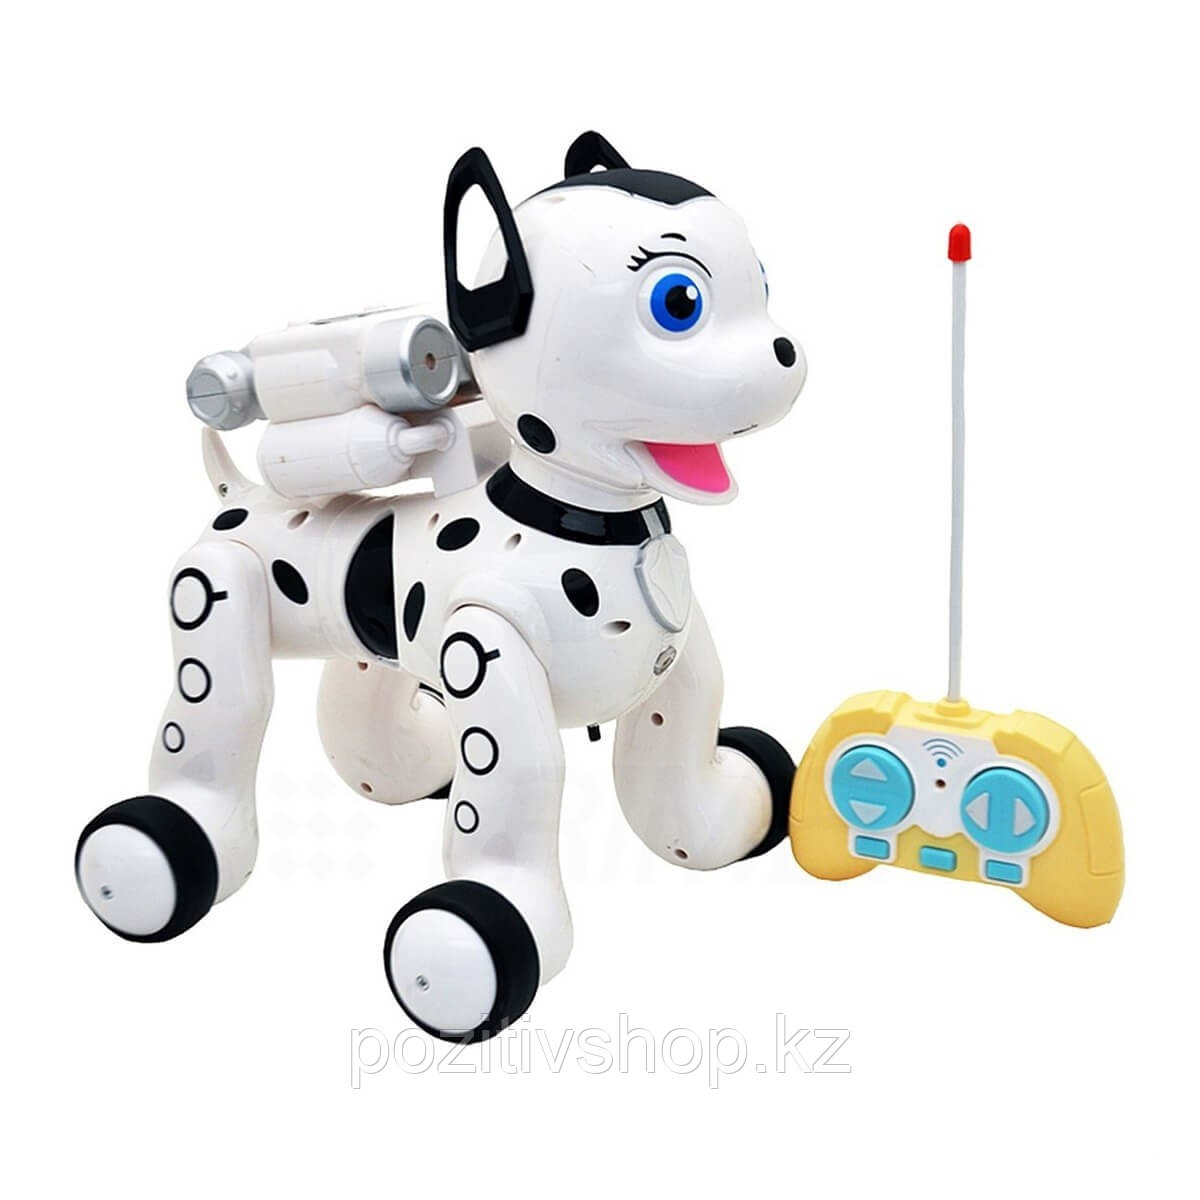 Интерактивный робот Умный Питомец ZYB-B2997